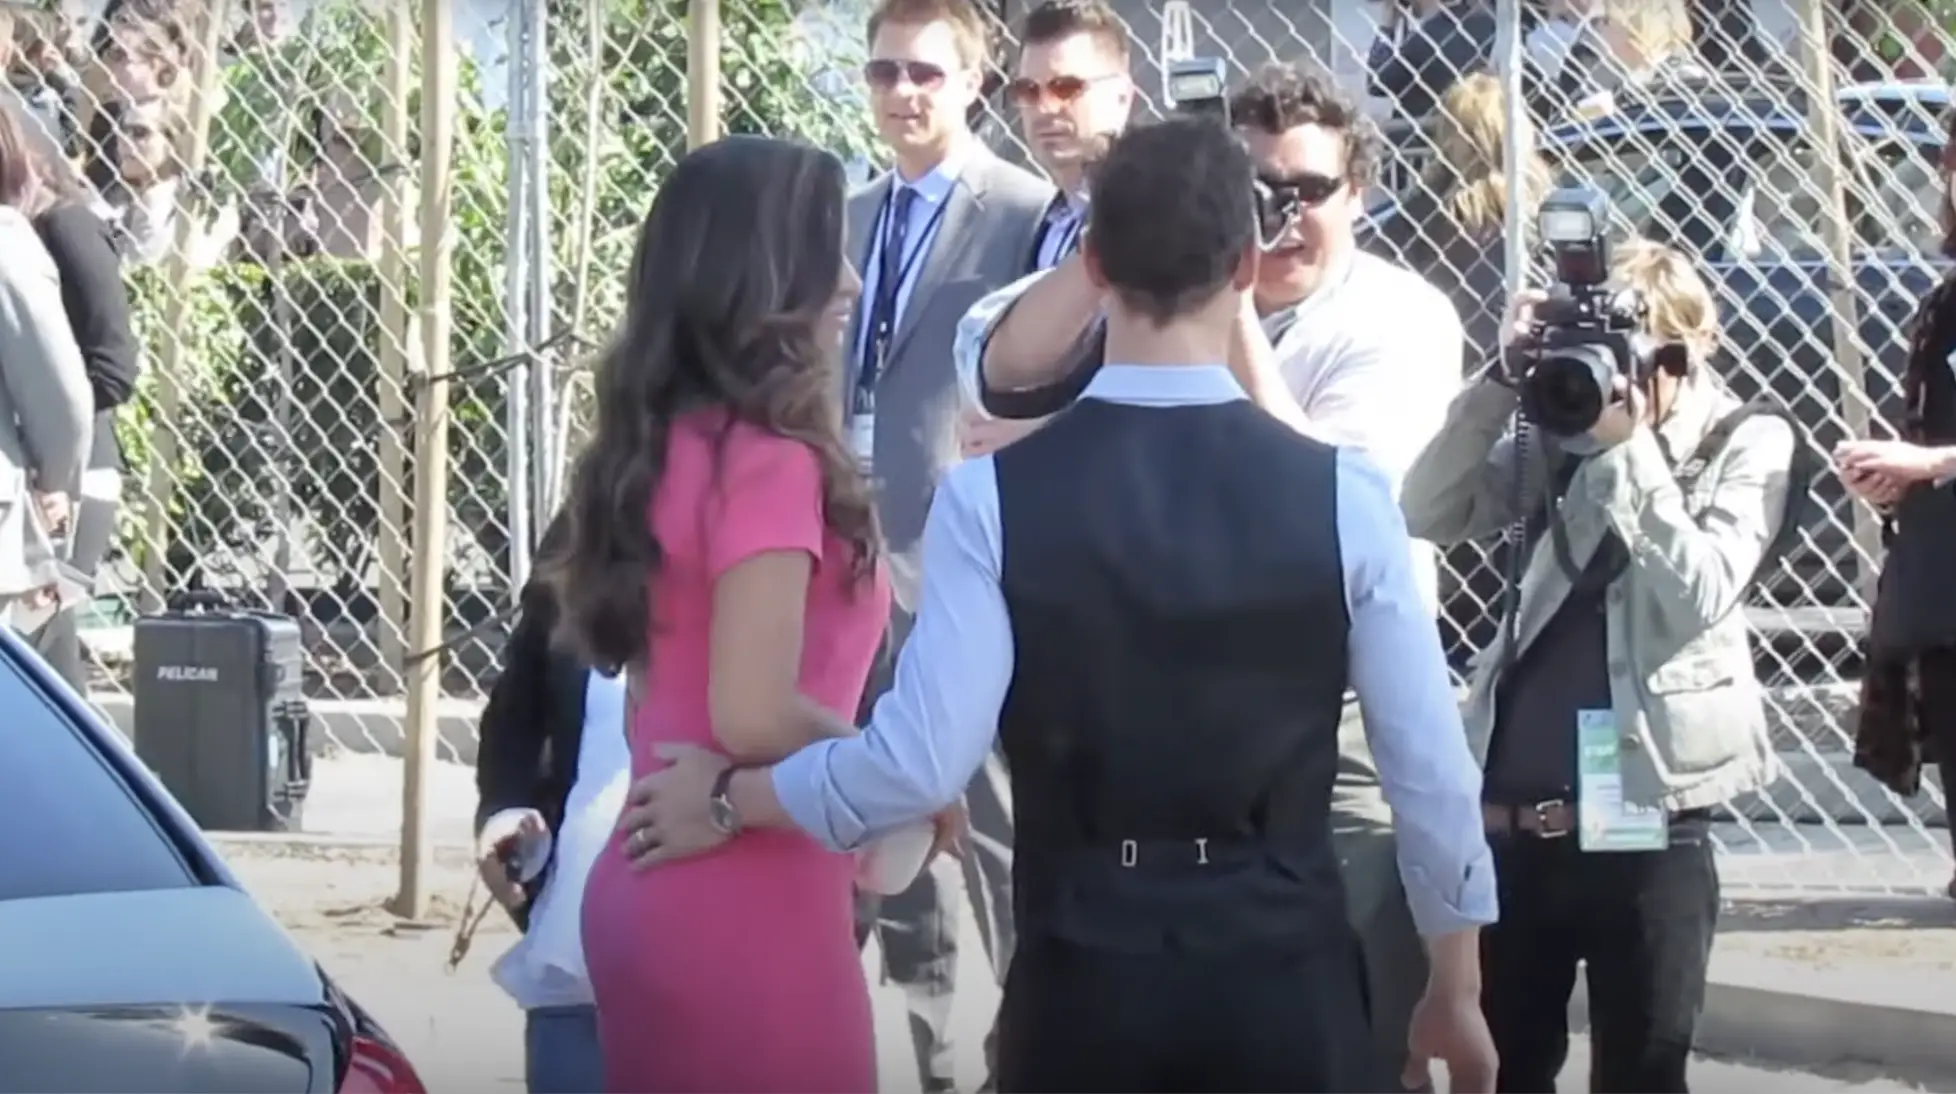 Camila Alves McConaughey et son mari Matthew McConaughey arrivent à un événement à Los Angeles le 7 juillet 2023 | Source : YouTube/Celebrity WotNot